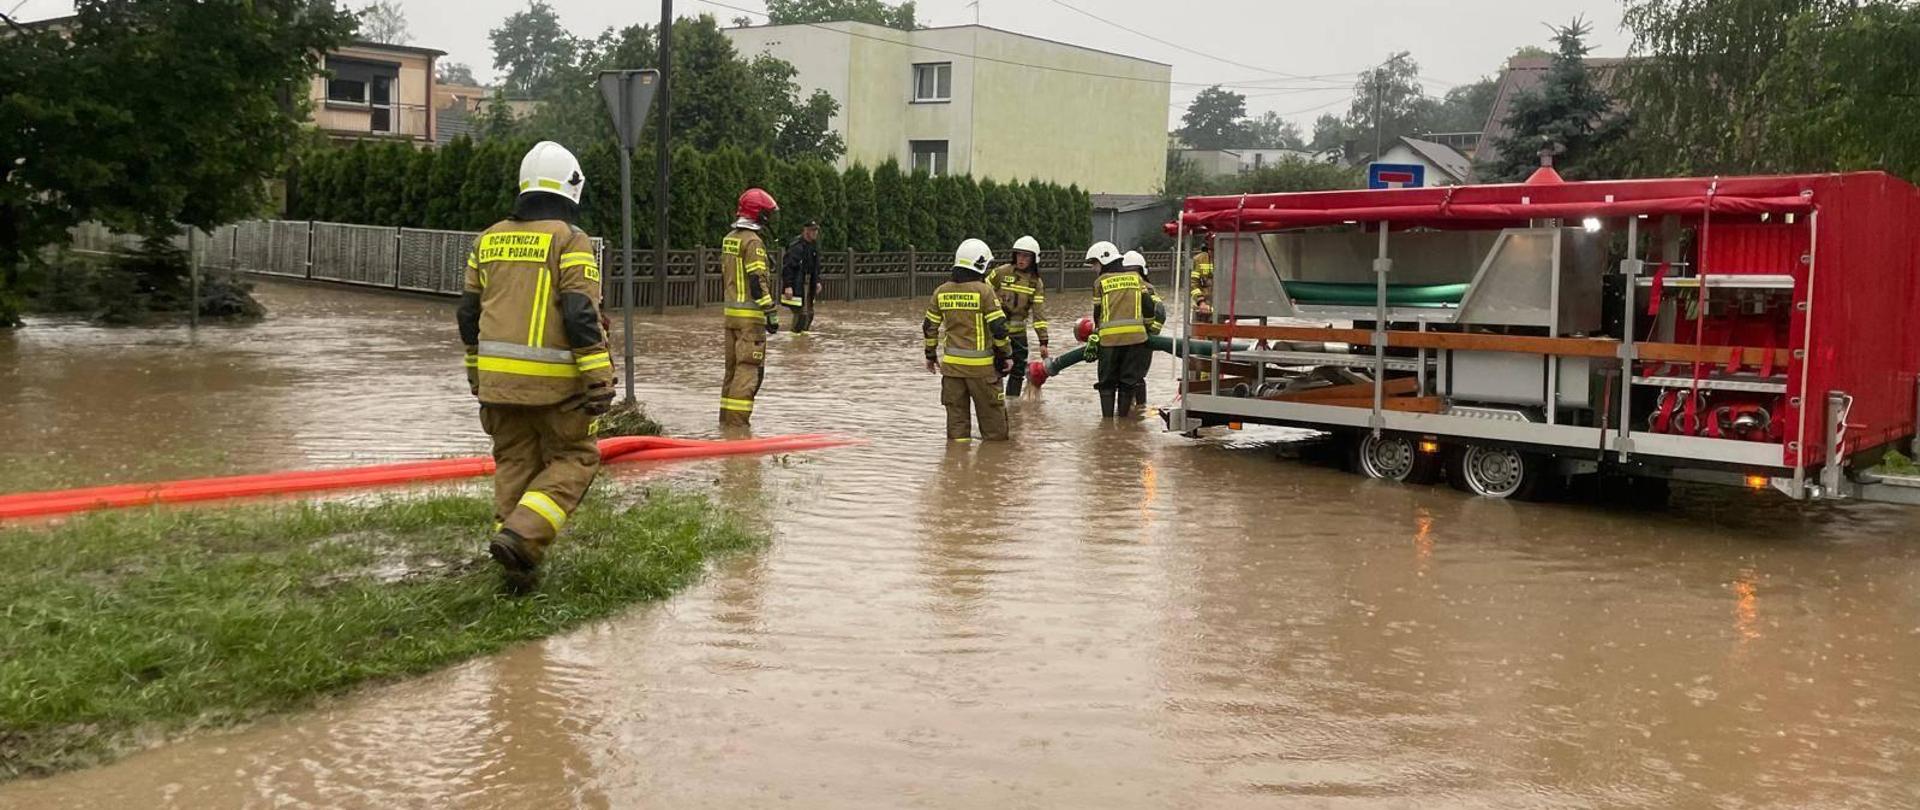 działania ratownicze prowadzone w zwiazku z ulewami w powiecie pleszewskim, pompowanie wody i zalane posesje